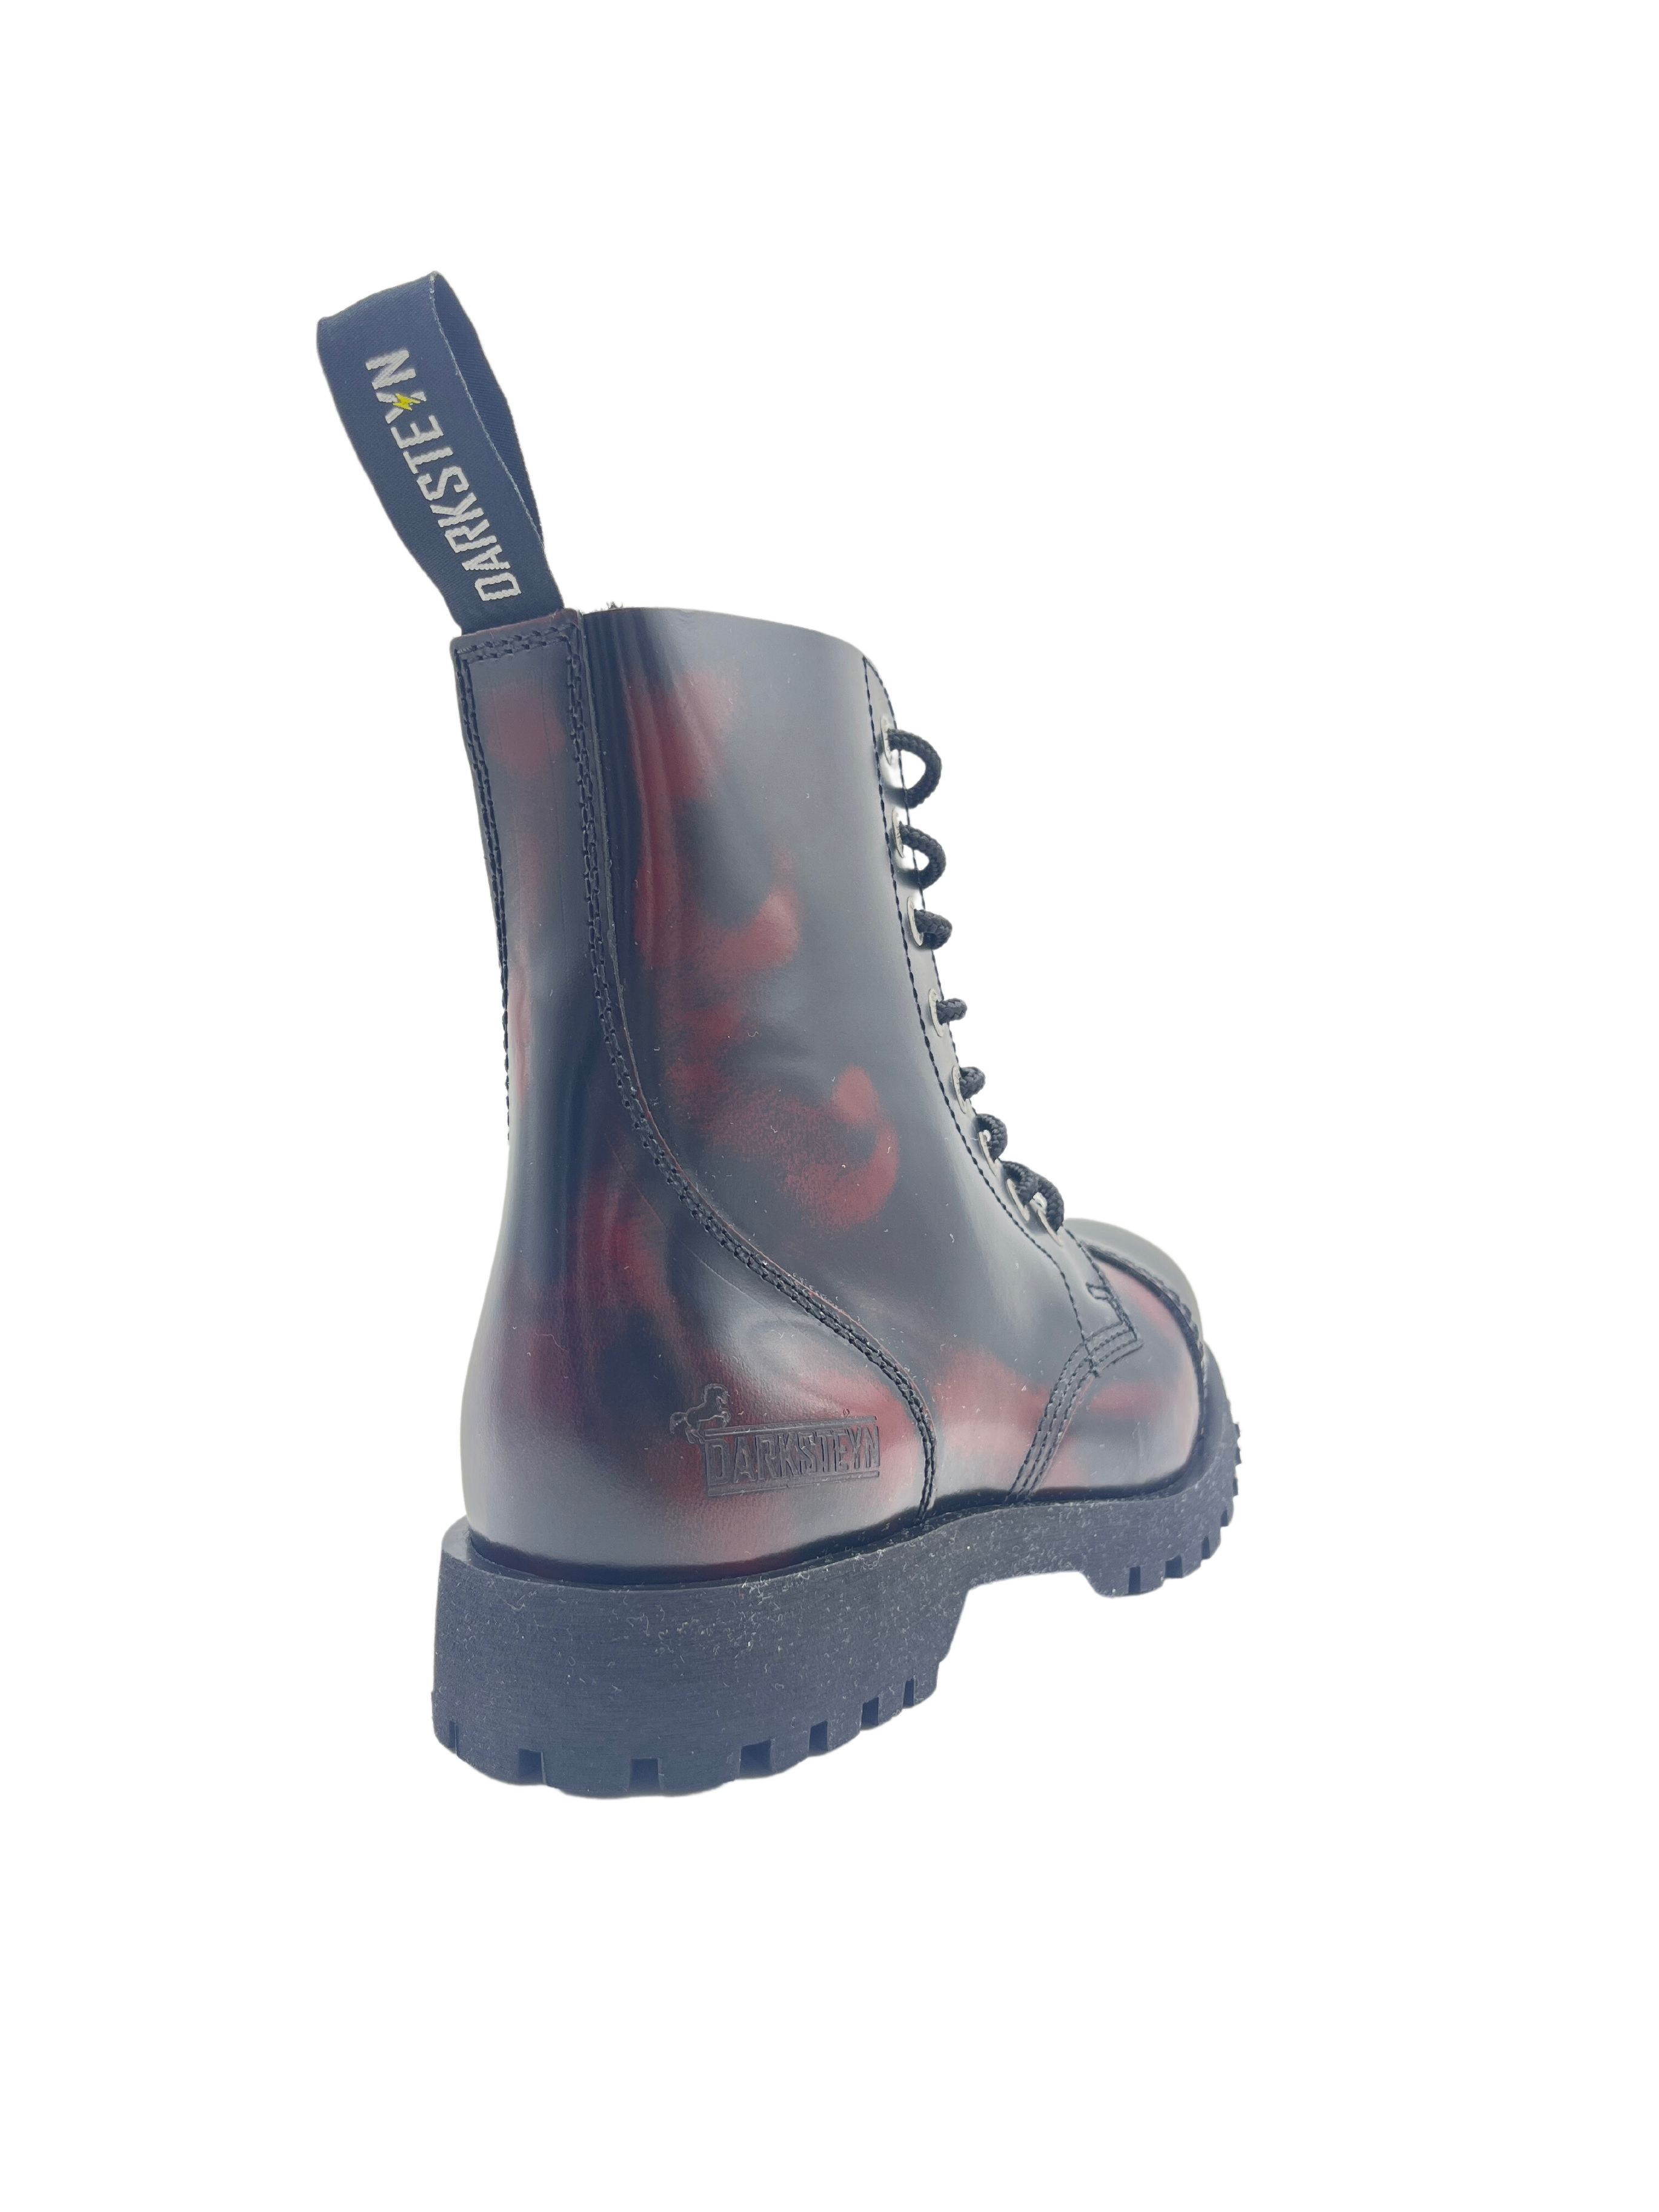 Darksteyn Stiefel Schuhe 8 Eye Ranger Premium Boots Red Rot Burgundy Springerstiefel